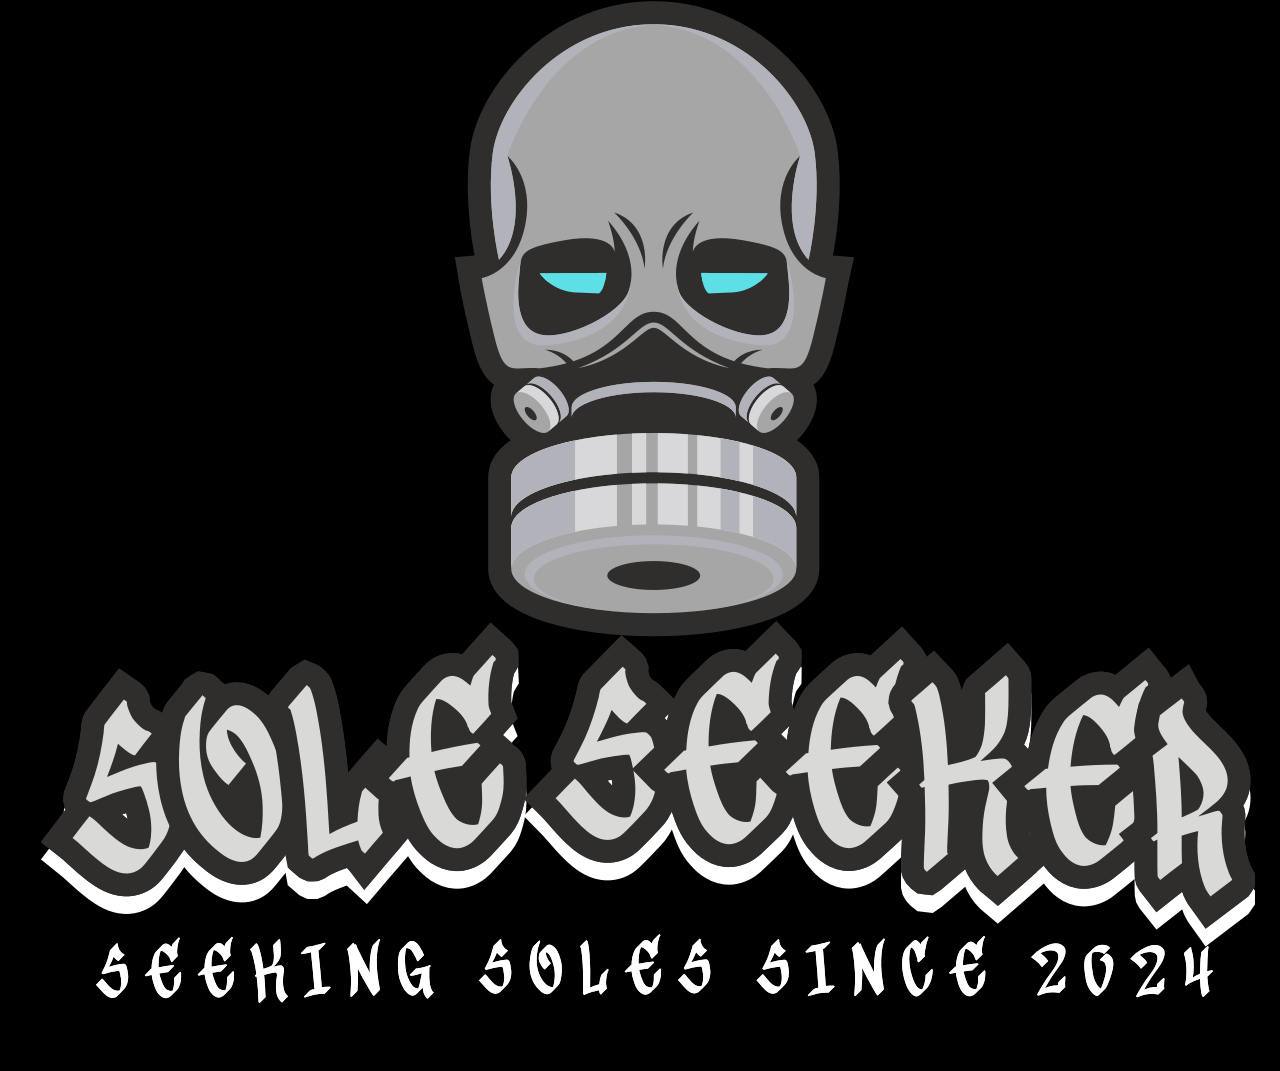 Sole Seeker's logo